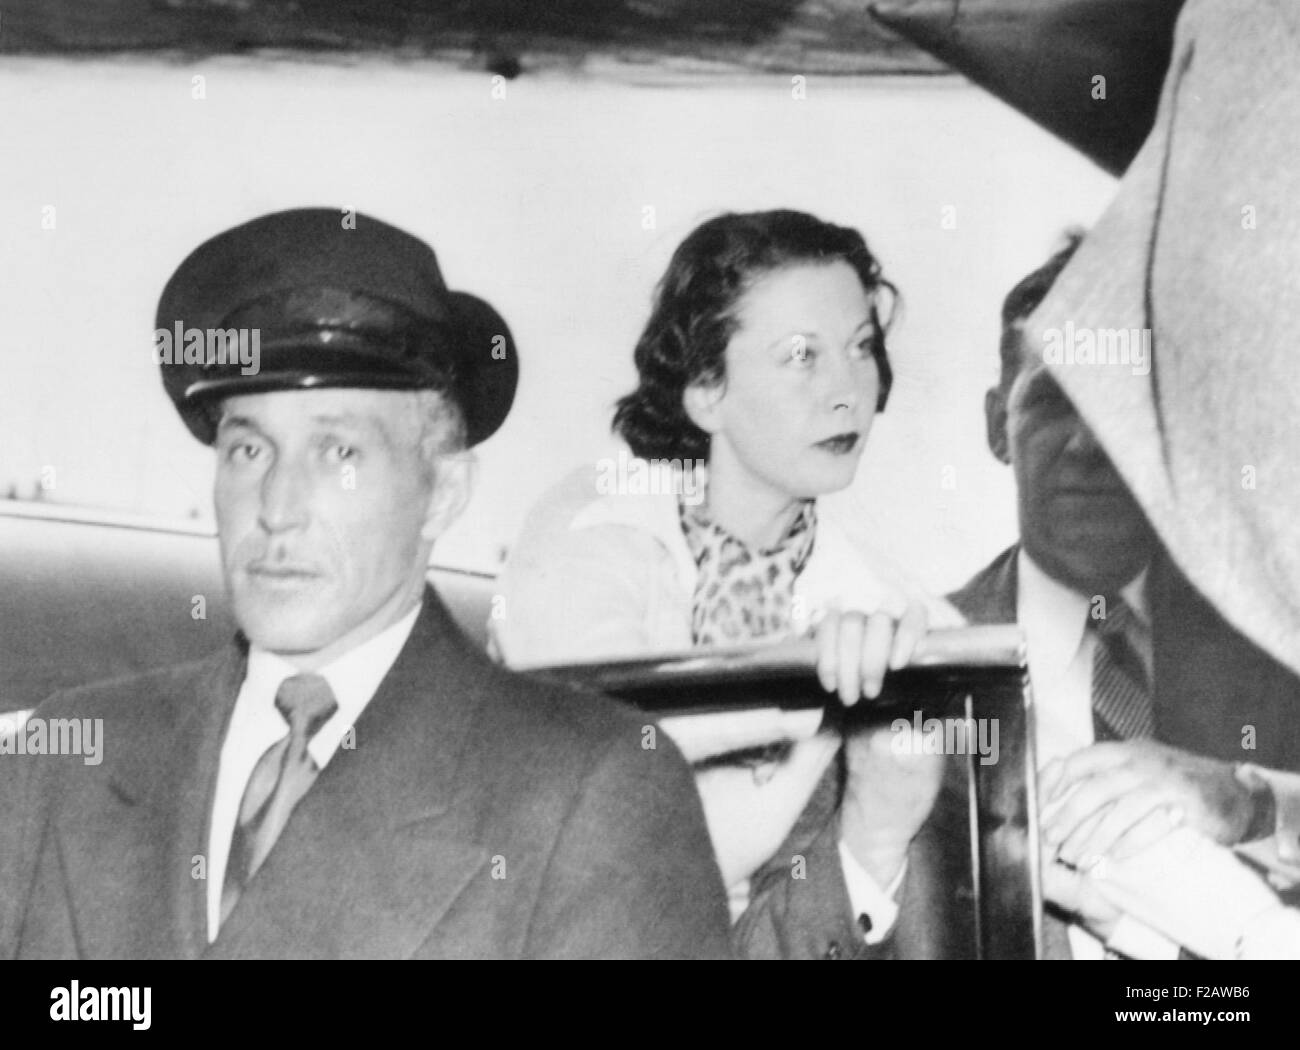 Vivien Leigh, souffrant de trouble bipolaire, était accompagné par Laurence Olivier (à droite). 19 mars, 1953. Ils étaient à l'aéroport de Manau à New York, à bord d'un vol à destination de la Grande-Bretagne. CSU (2015   1439 11) Banque D'Images